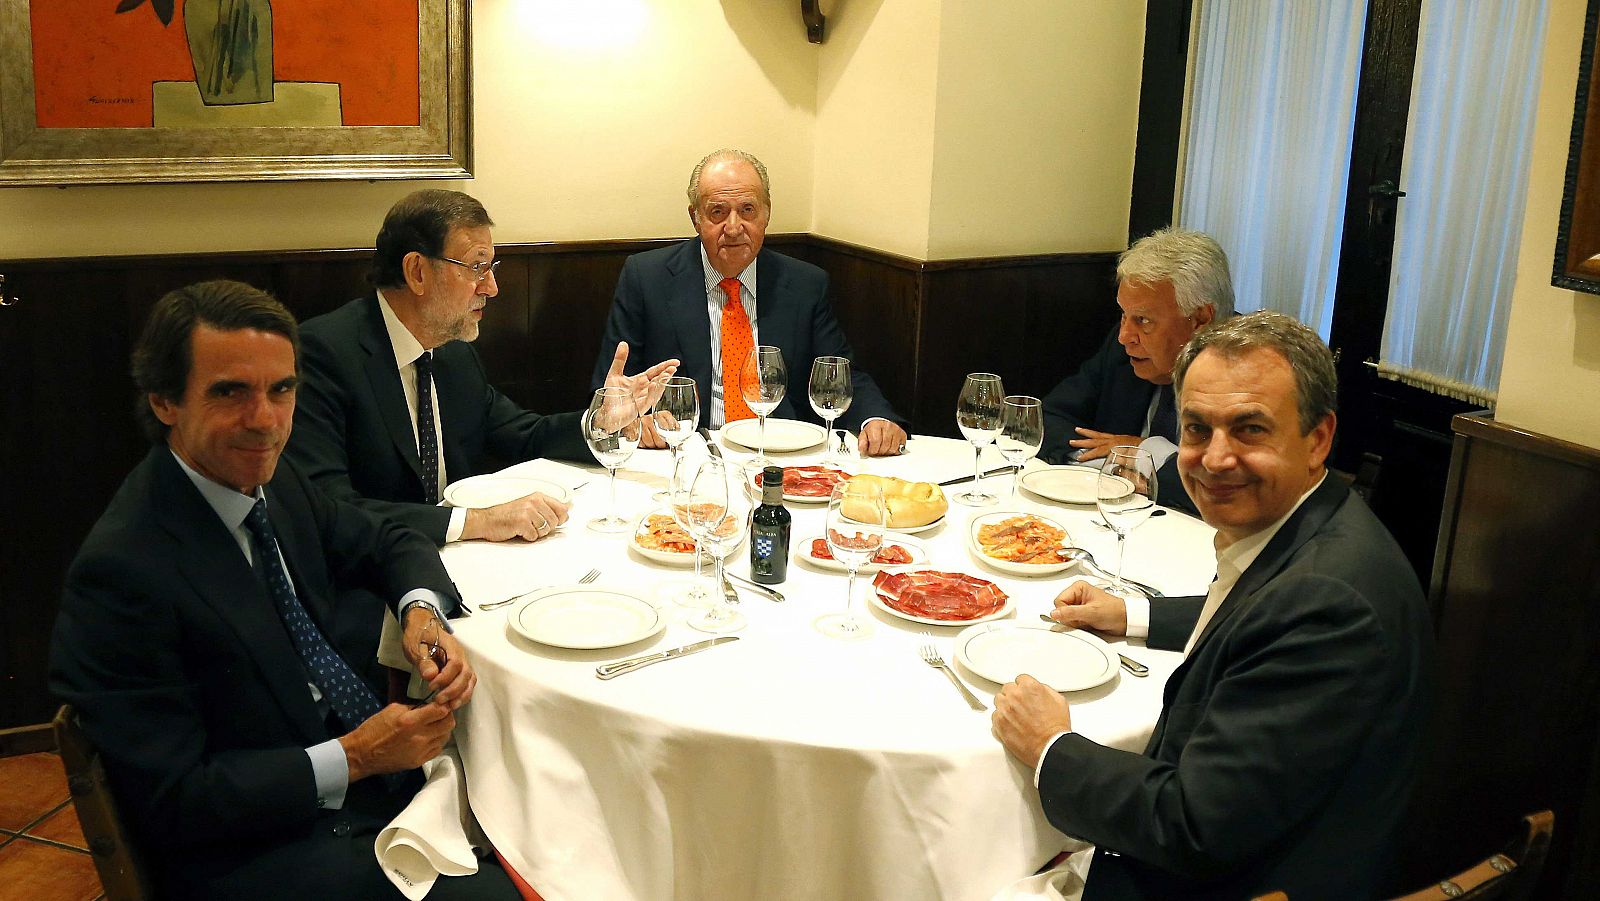 Imagen facilitada por Presidencia del Gobierno, del Rey Juan Carlos acompañado por el Presidente del Gobierno, Mariano Rajoy y los expresidentes José María Aznar, Felipe González y José Luis Rodriguez Zapatero.